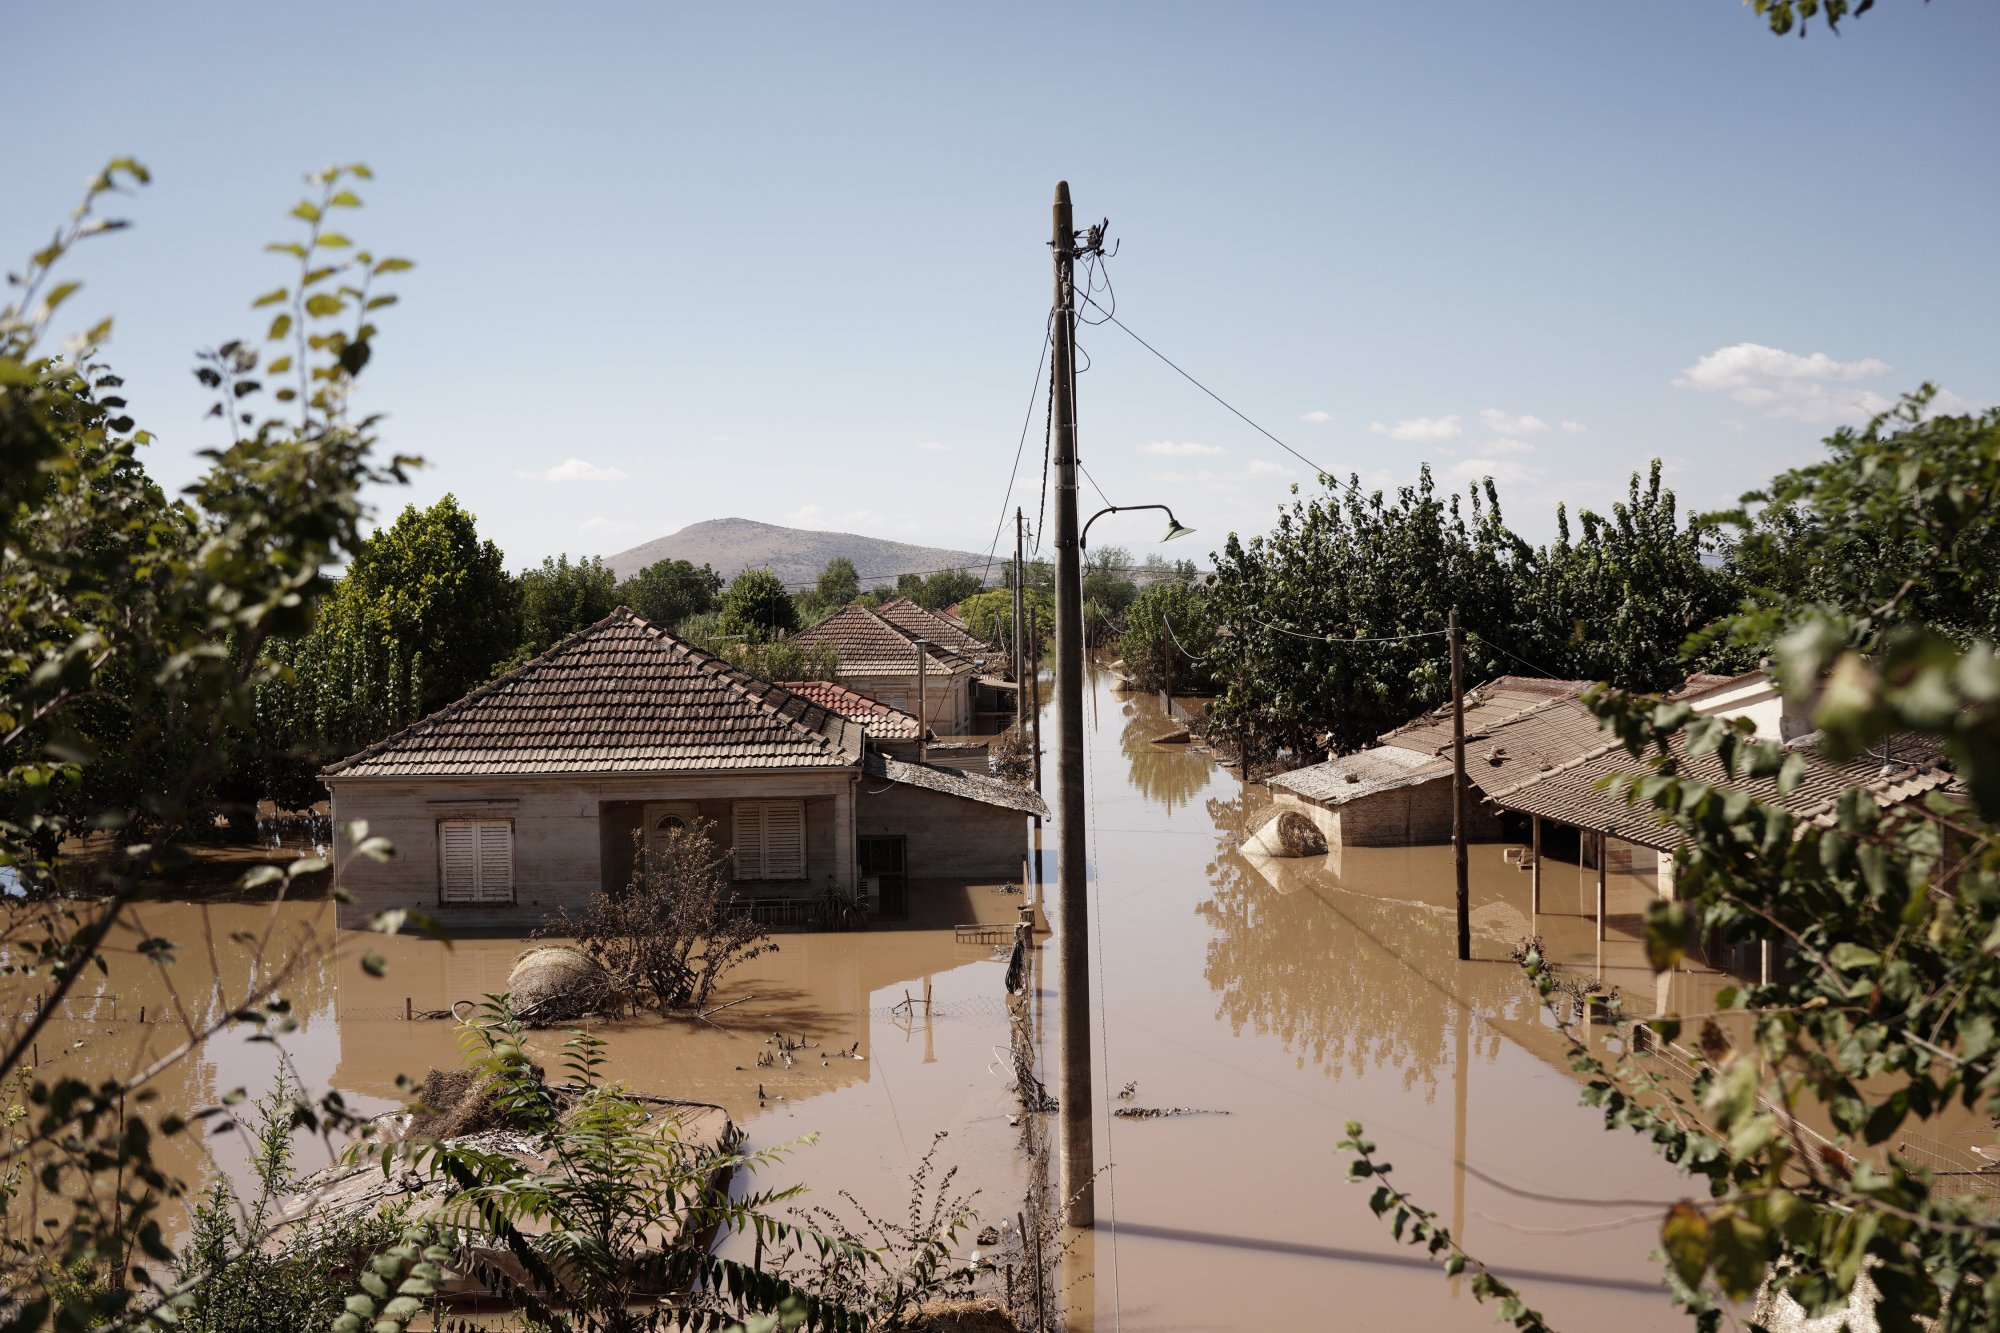 Κακοκαιρία Daniel: Εξοργιστικές καταγγελίες - Ζήτησαν ενοίκια Αθήνας από πλημμυροπαθείς στην Καρδίτσα